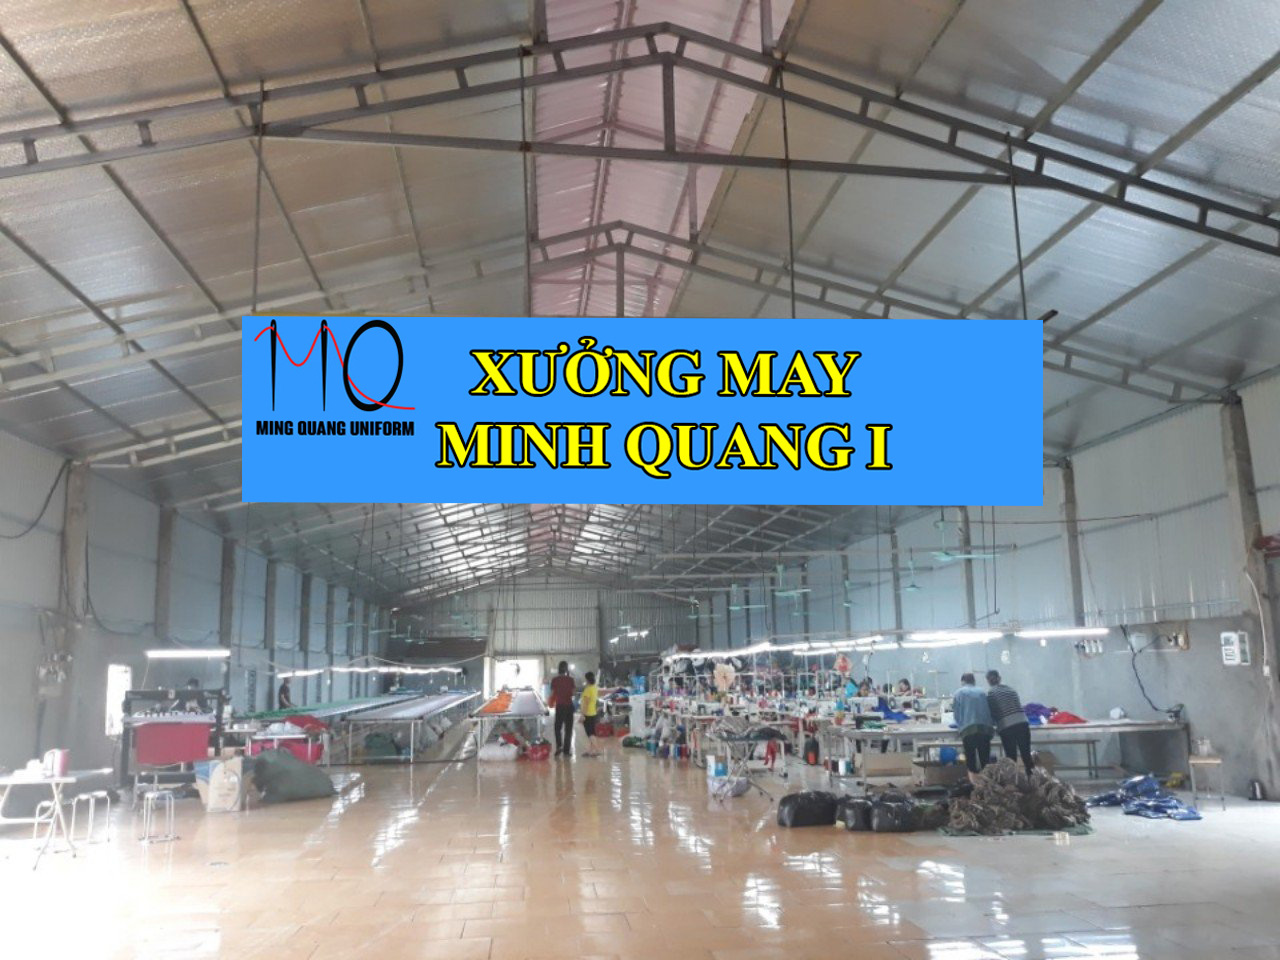 Minh Quang sở hữu xưởng may đồng phục bảo vệ với quy mô: 200 công nhân